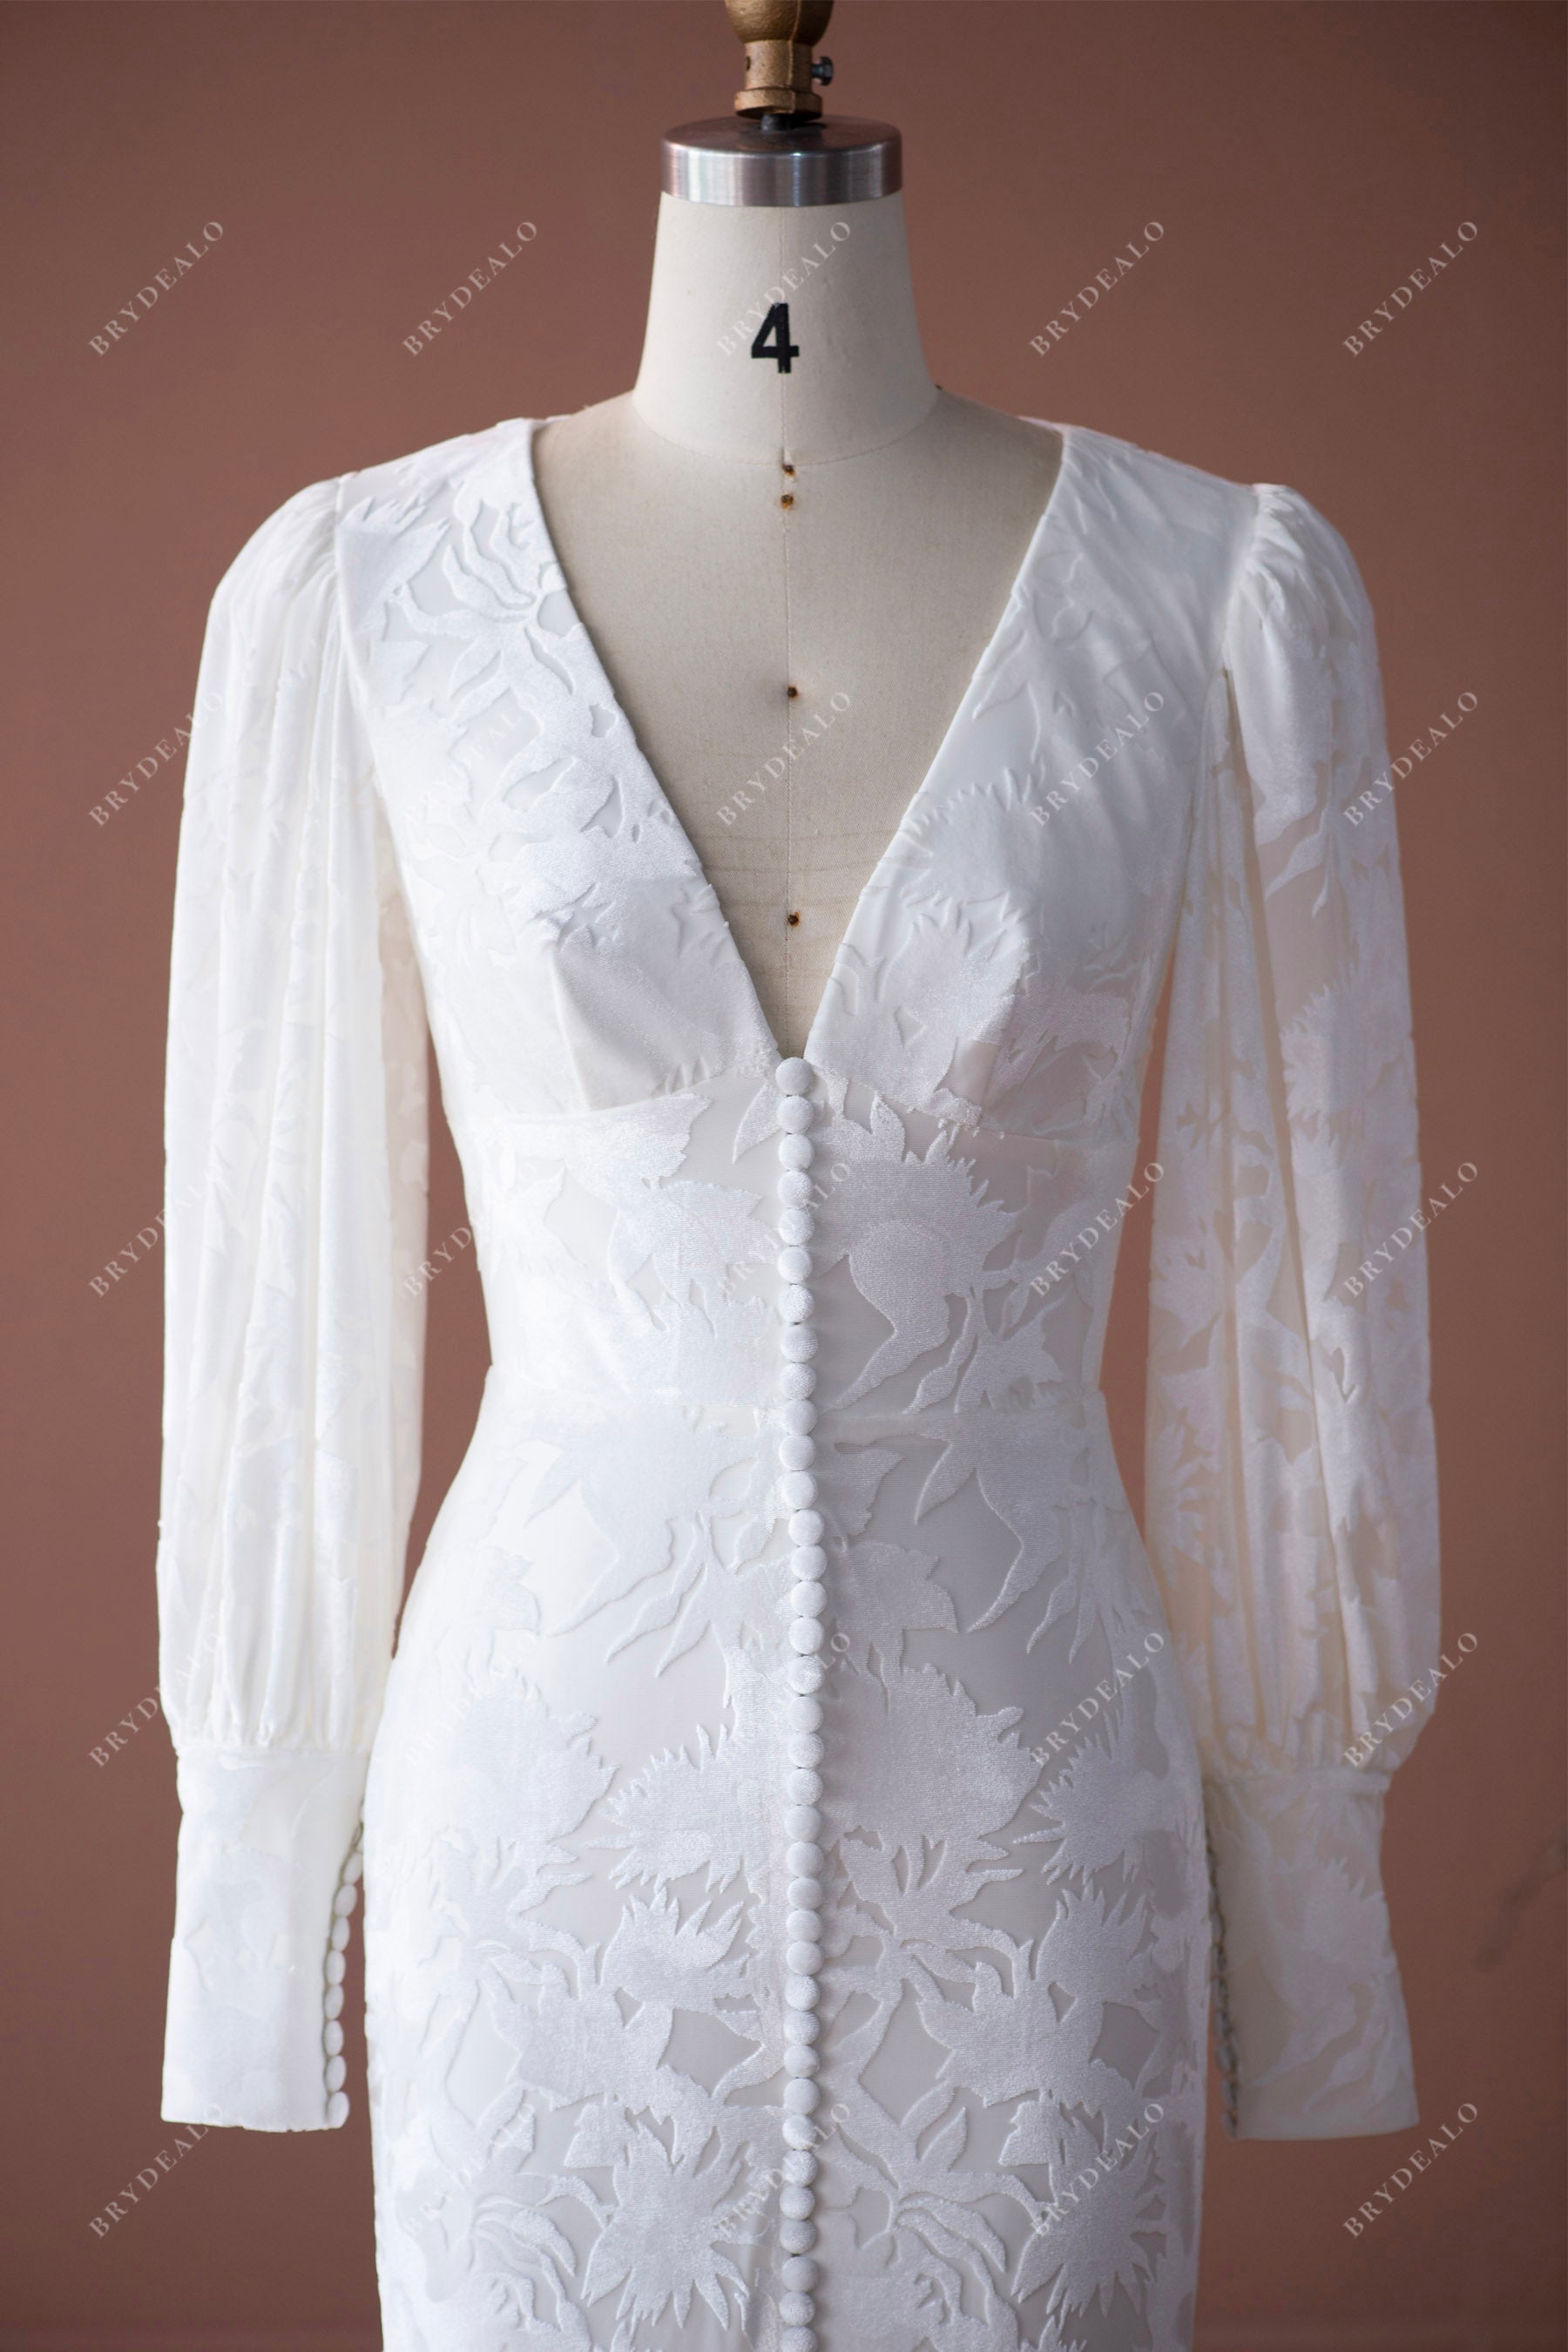 empire waist v-neck spring destination wedding dress